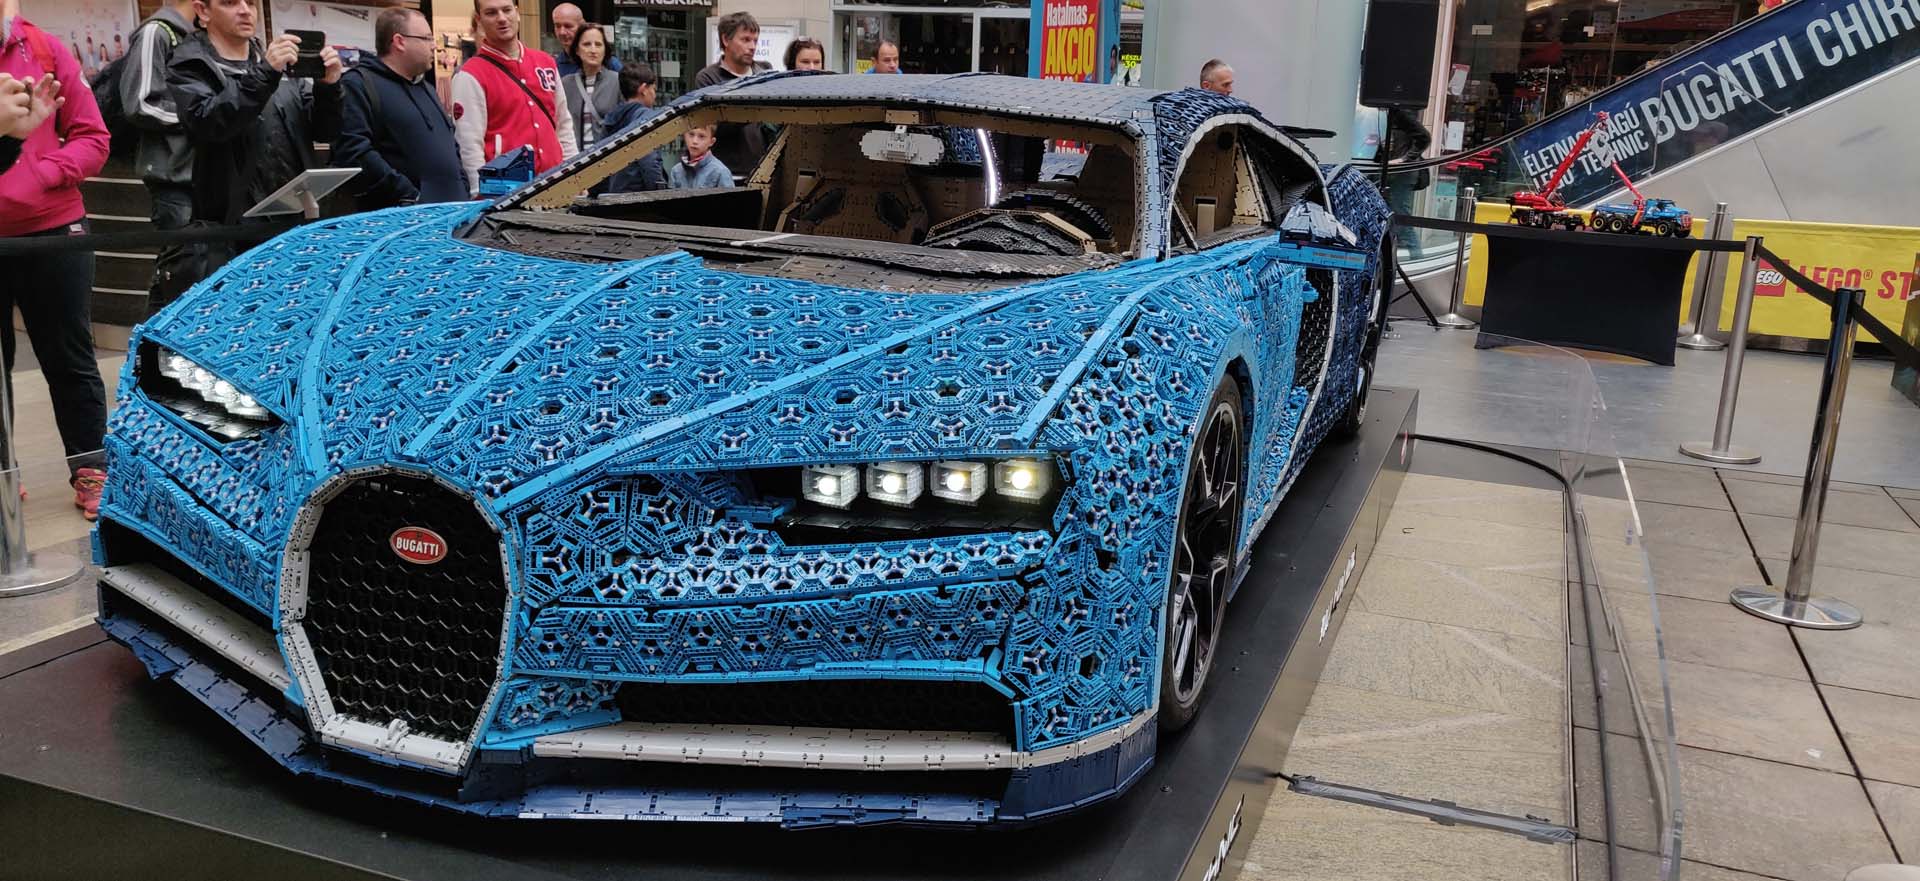 Lego Bugatti Chiron Budapest